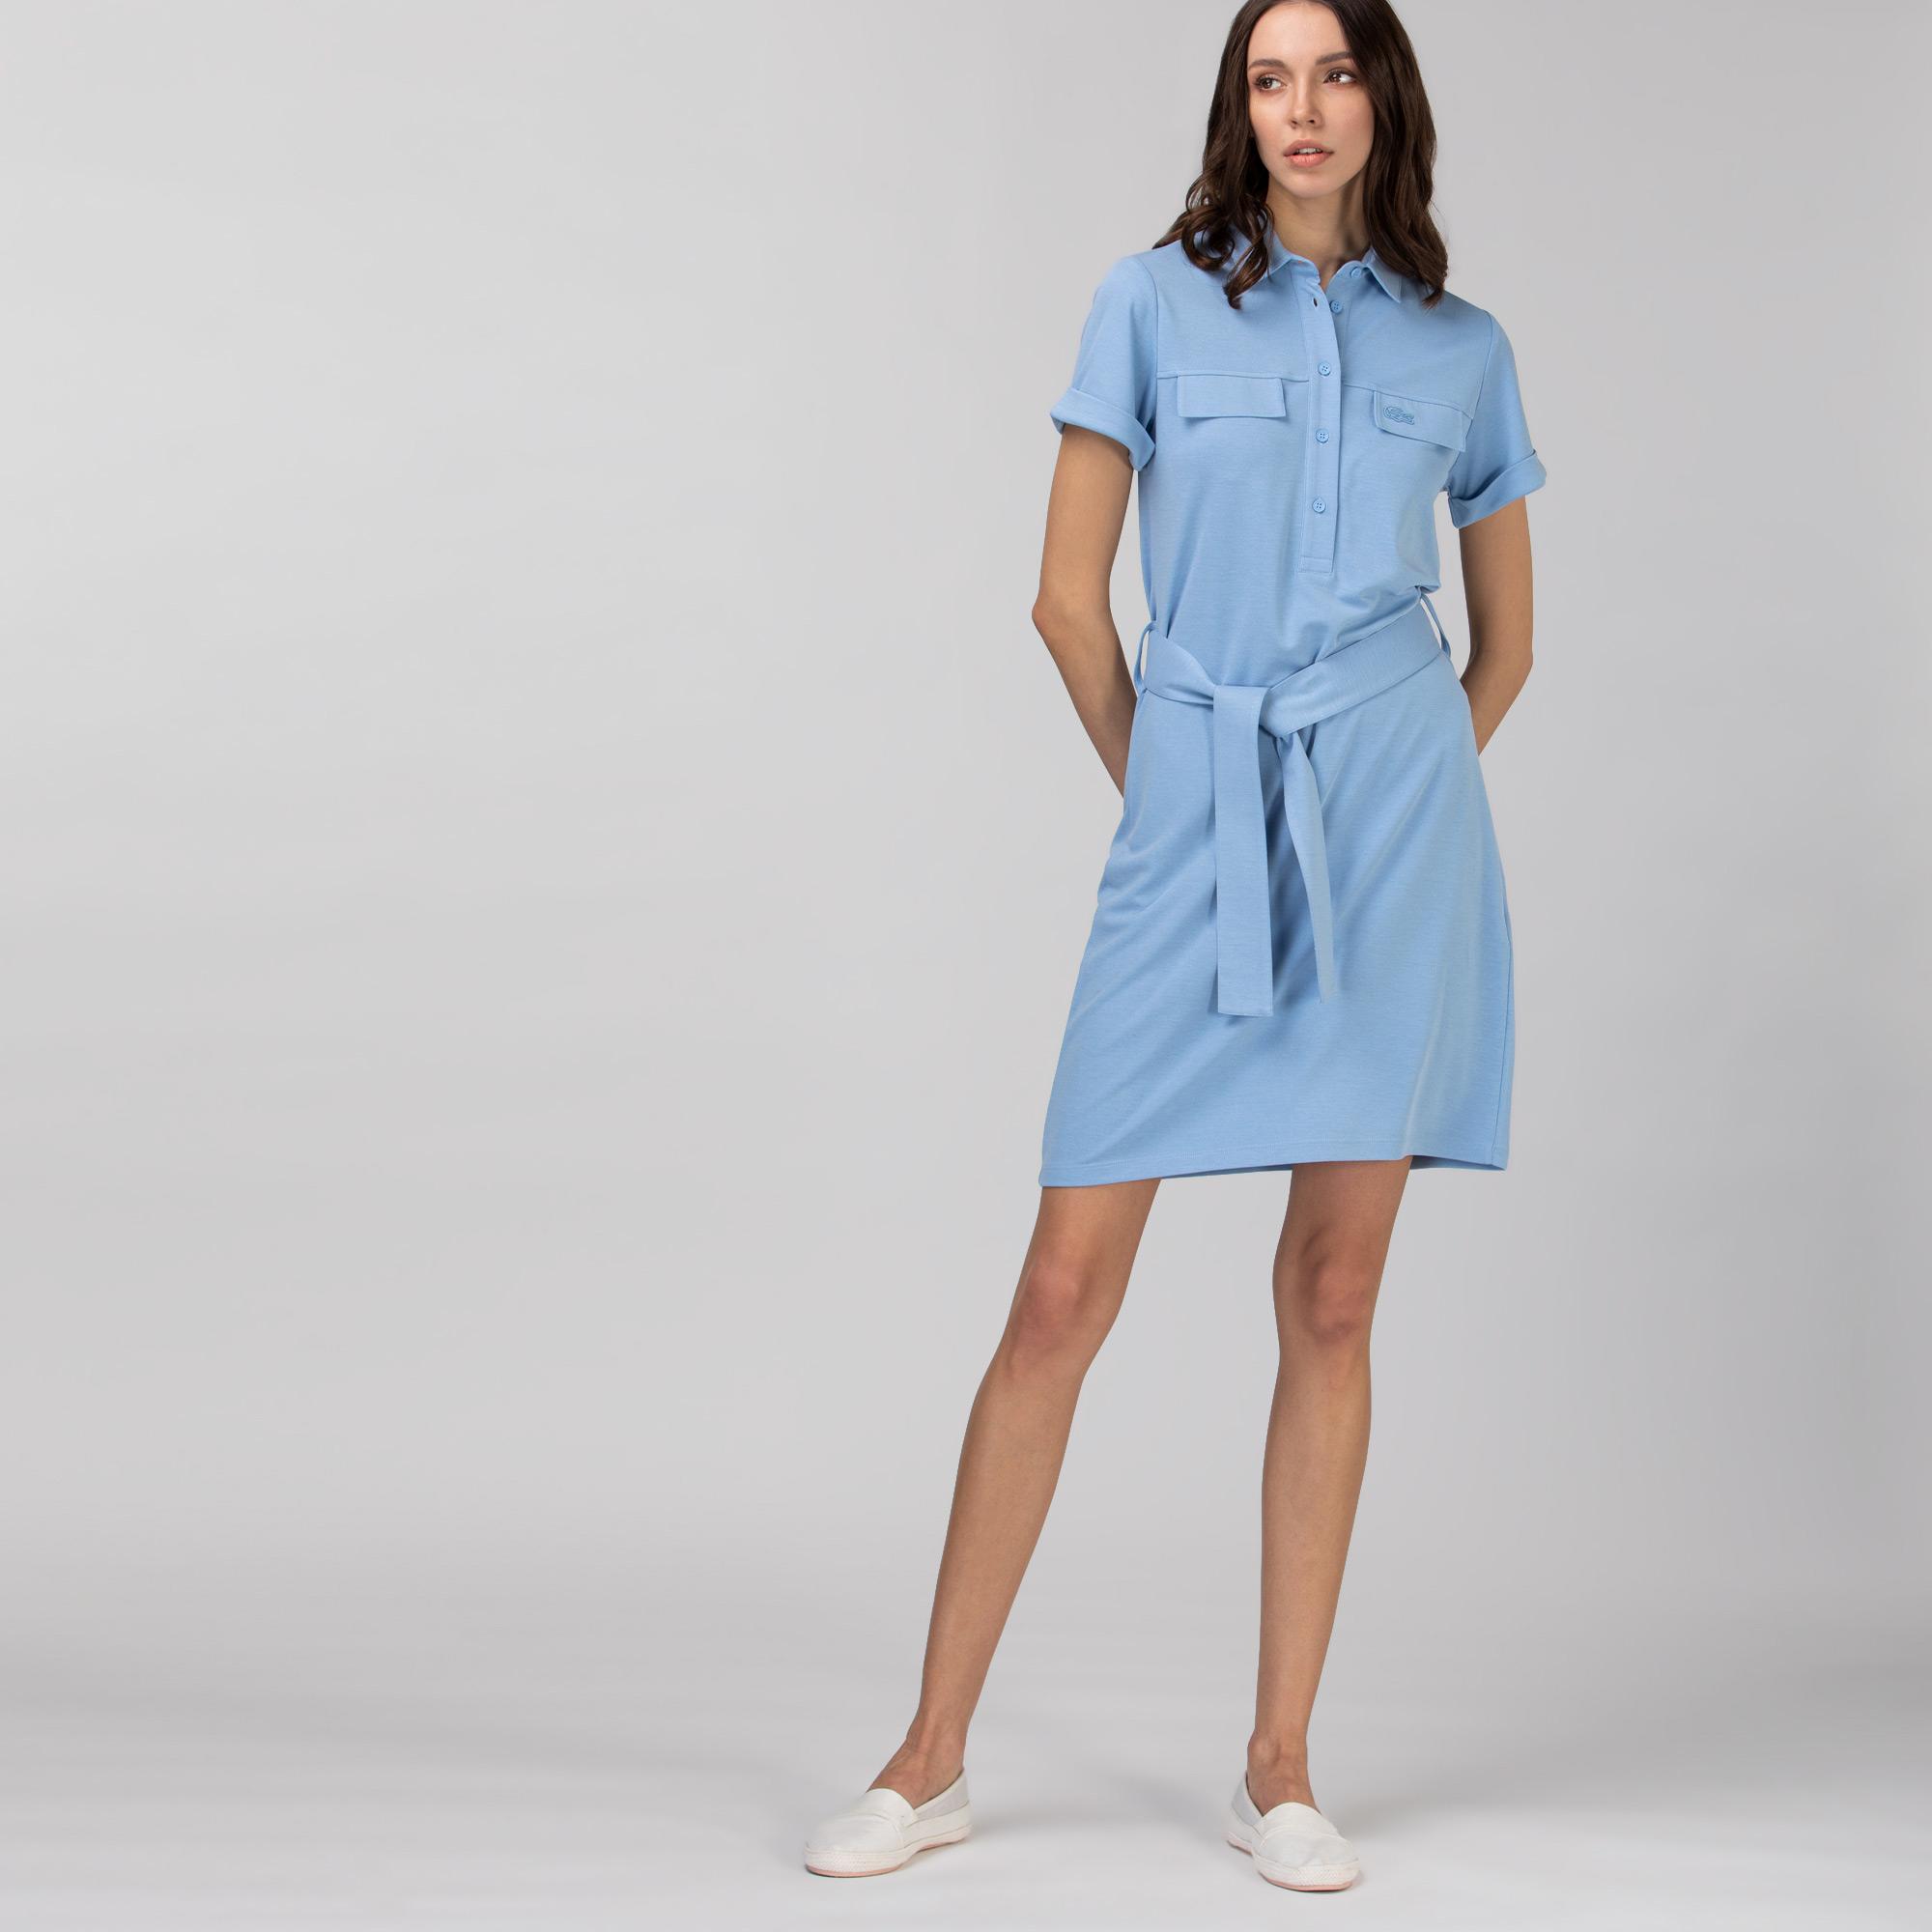 Lacoste Kadın Kısa Kollu Gömlek Yaka Açık Mavi Elbise. 2